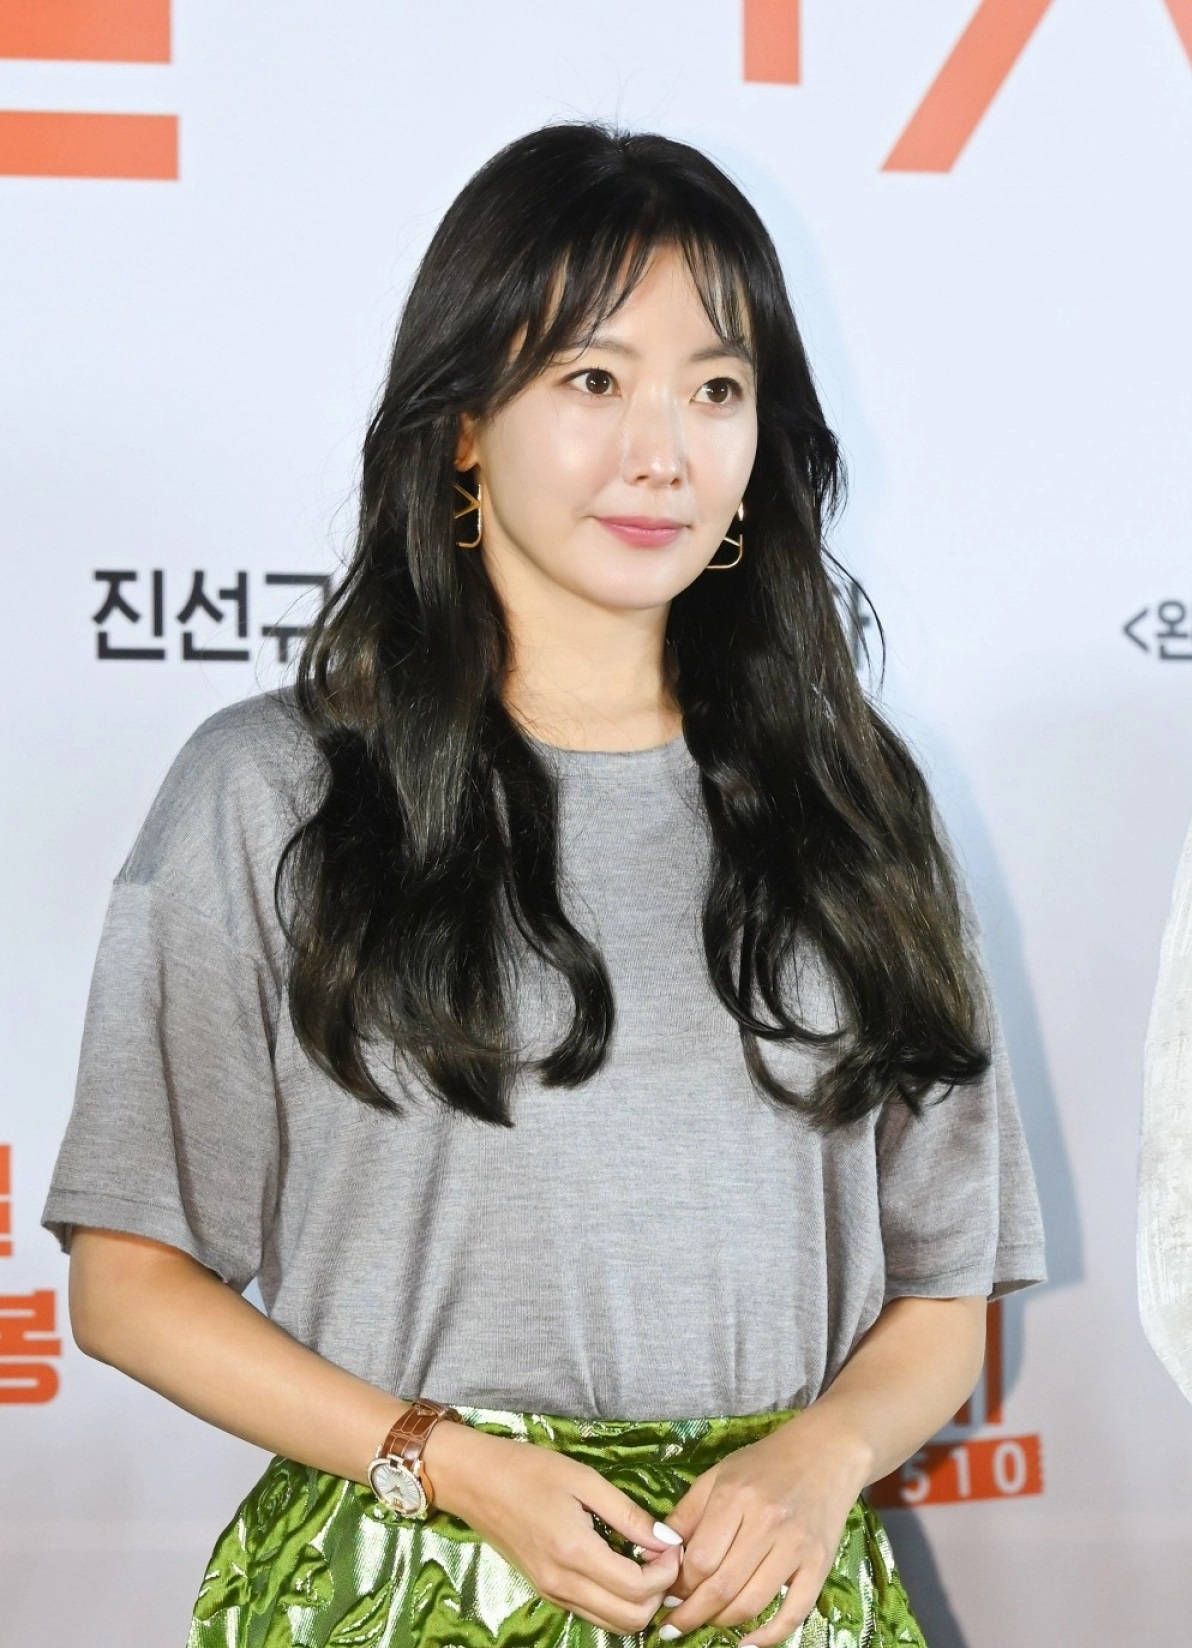 Xuất hiện ở buổi họp báo cho bộ phim Honeysweet đã được tổ chức ở Seoul, Hàn Quốc, Kim Hee Sun diện chiếc áo phông xám và váy xòe màu xanh lá cây